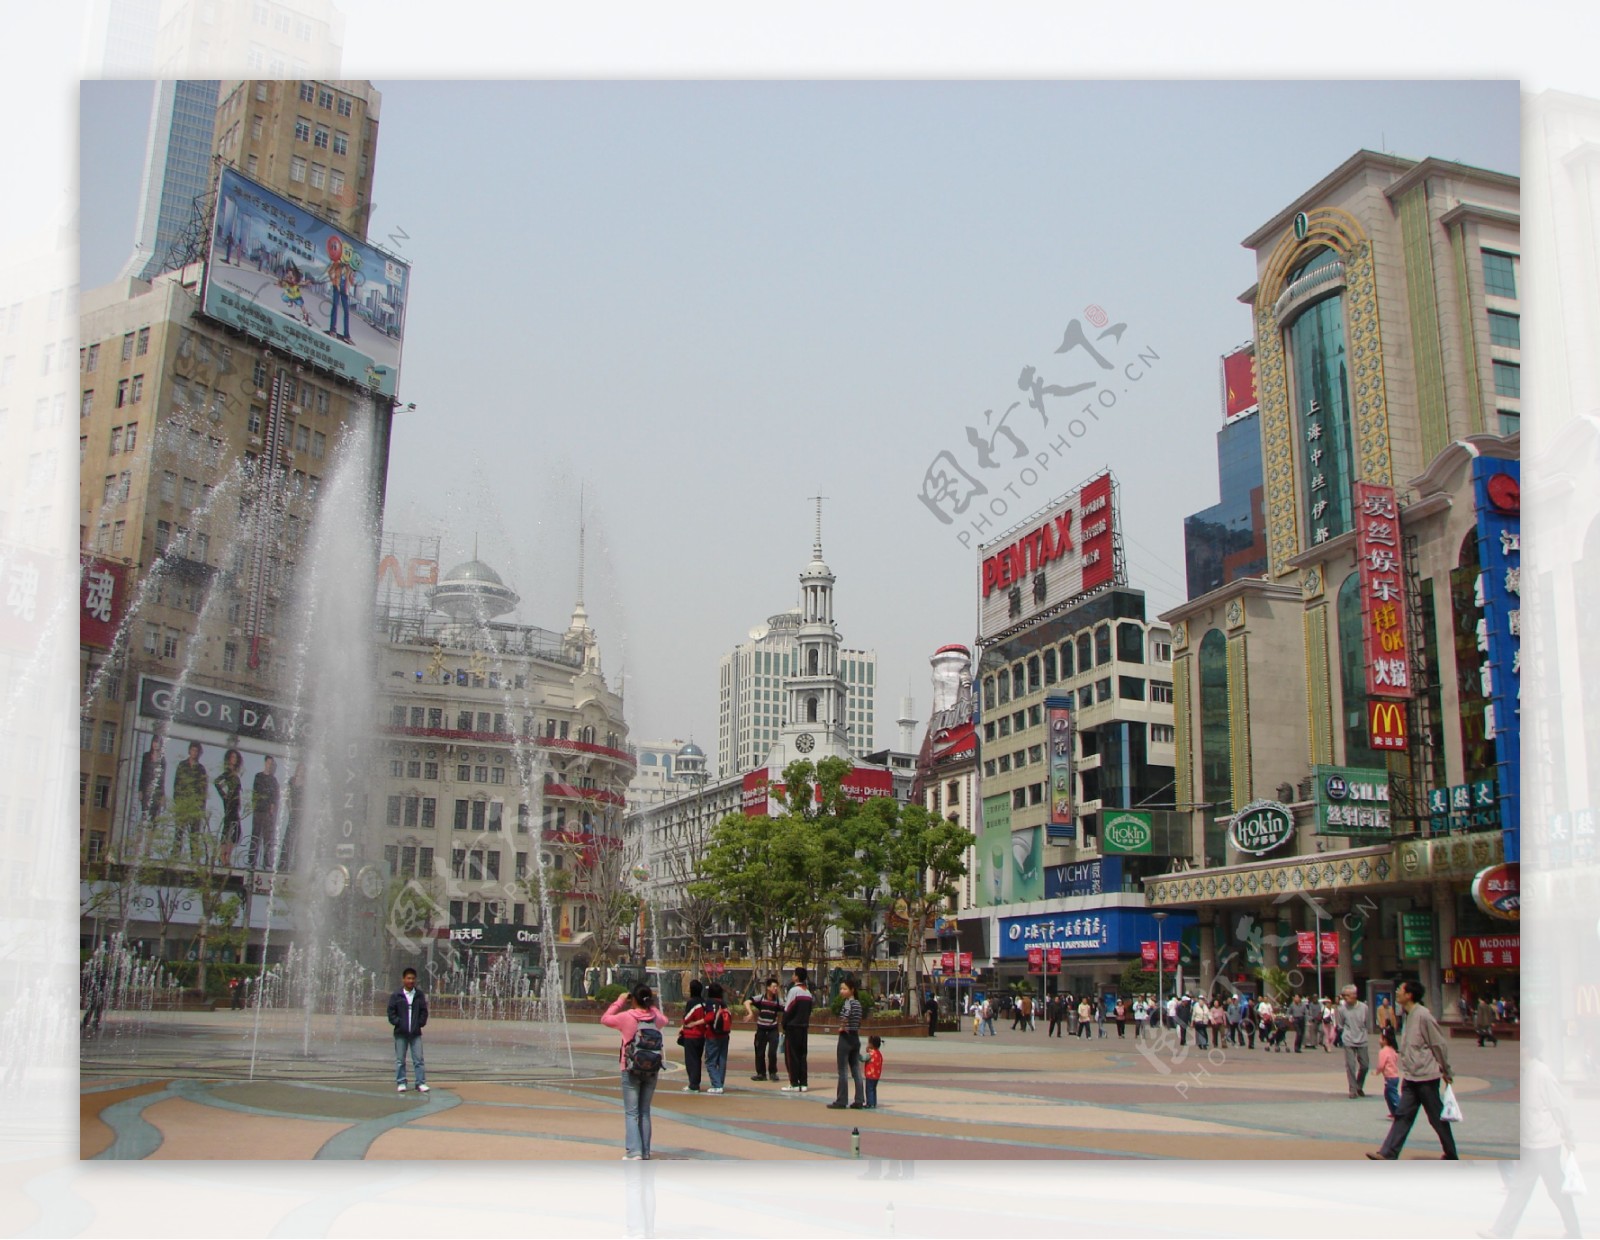 上海南京东路步行街街景图片